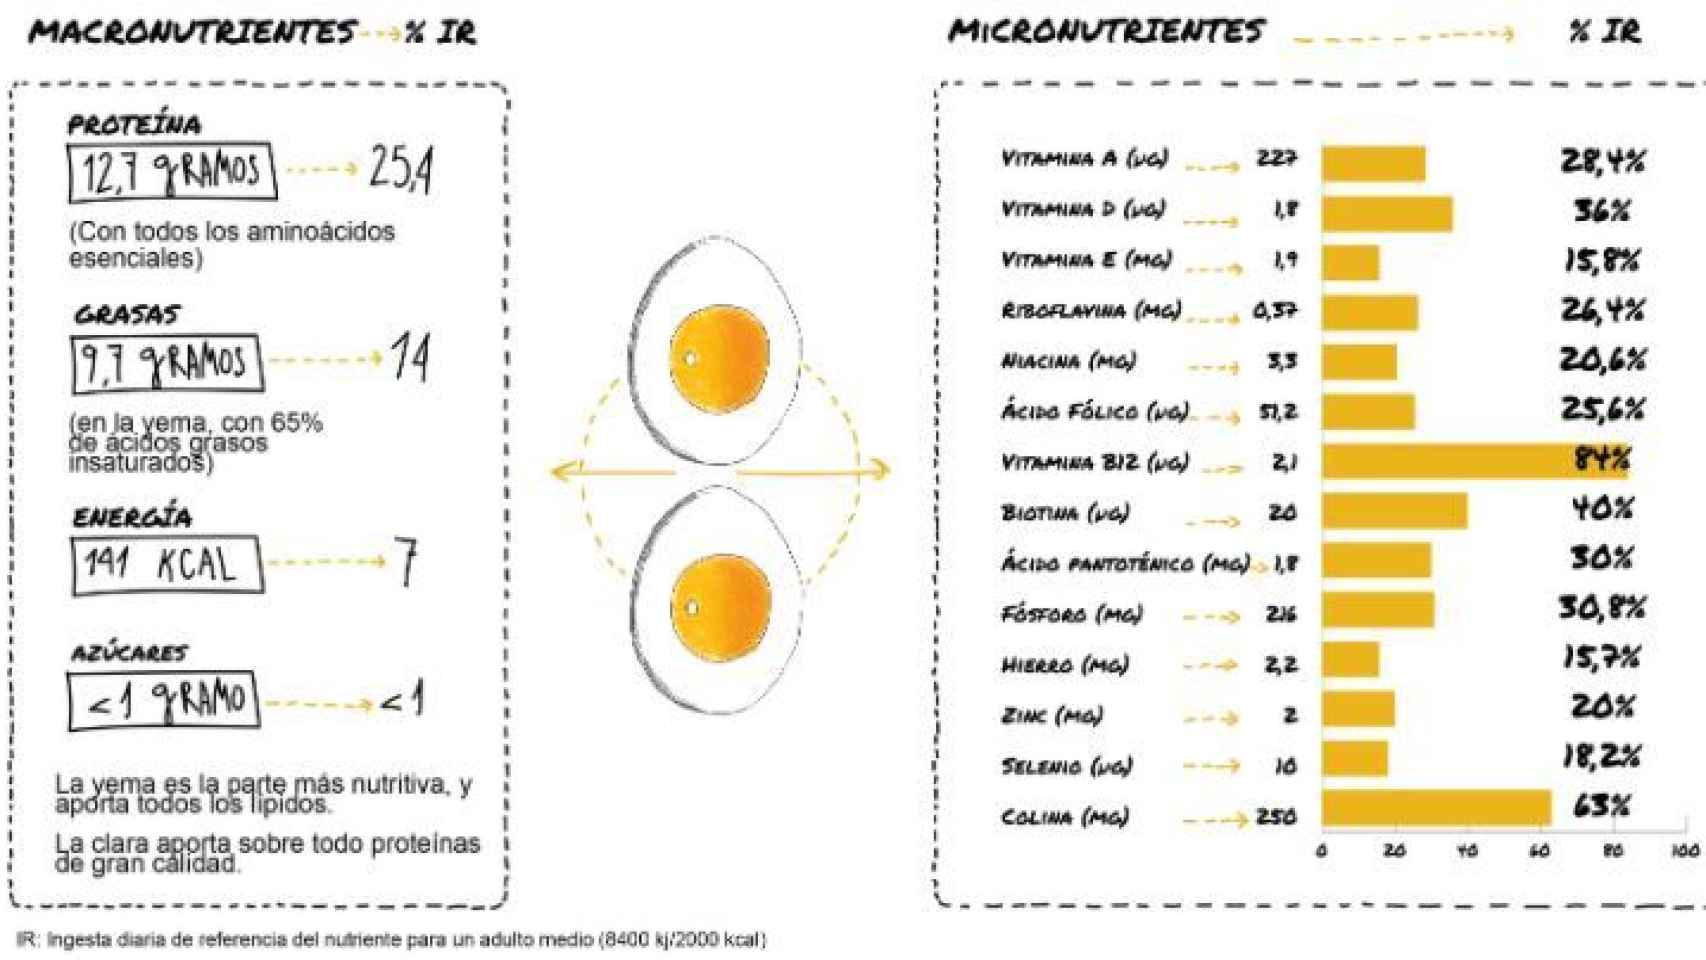 Valor nutricional por ración de dos huevos medianos (100 gramos).